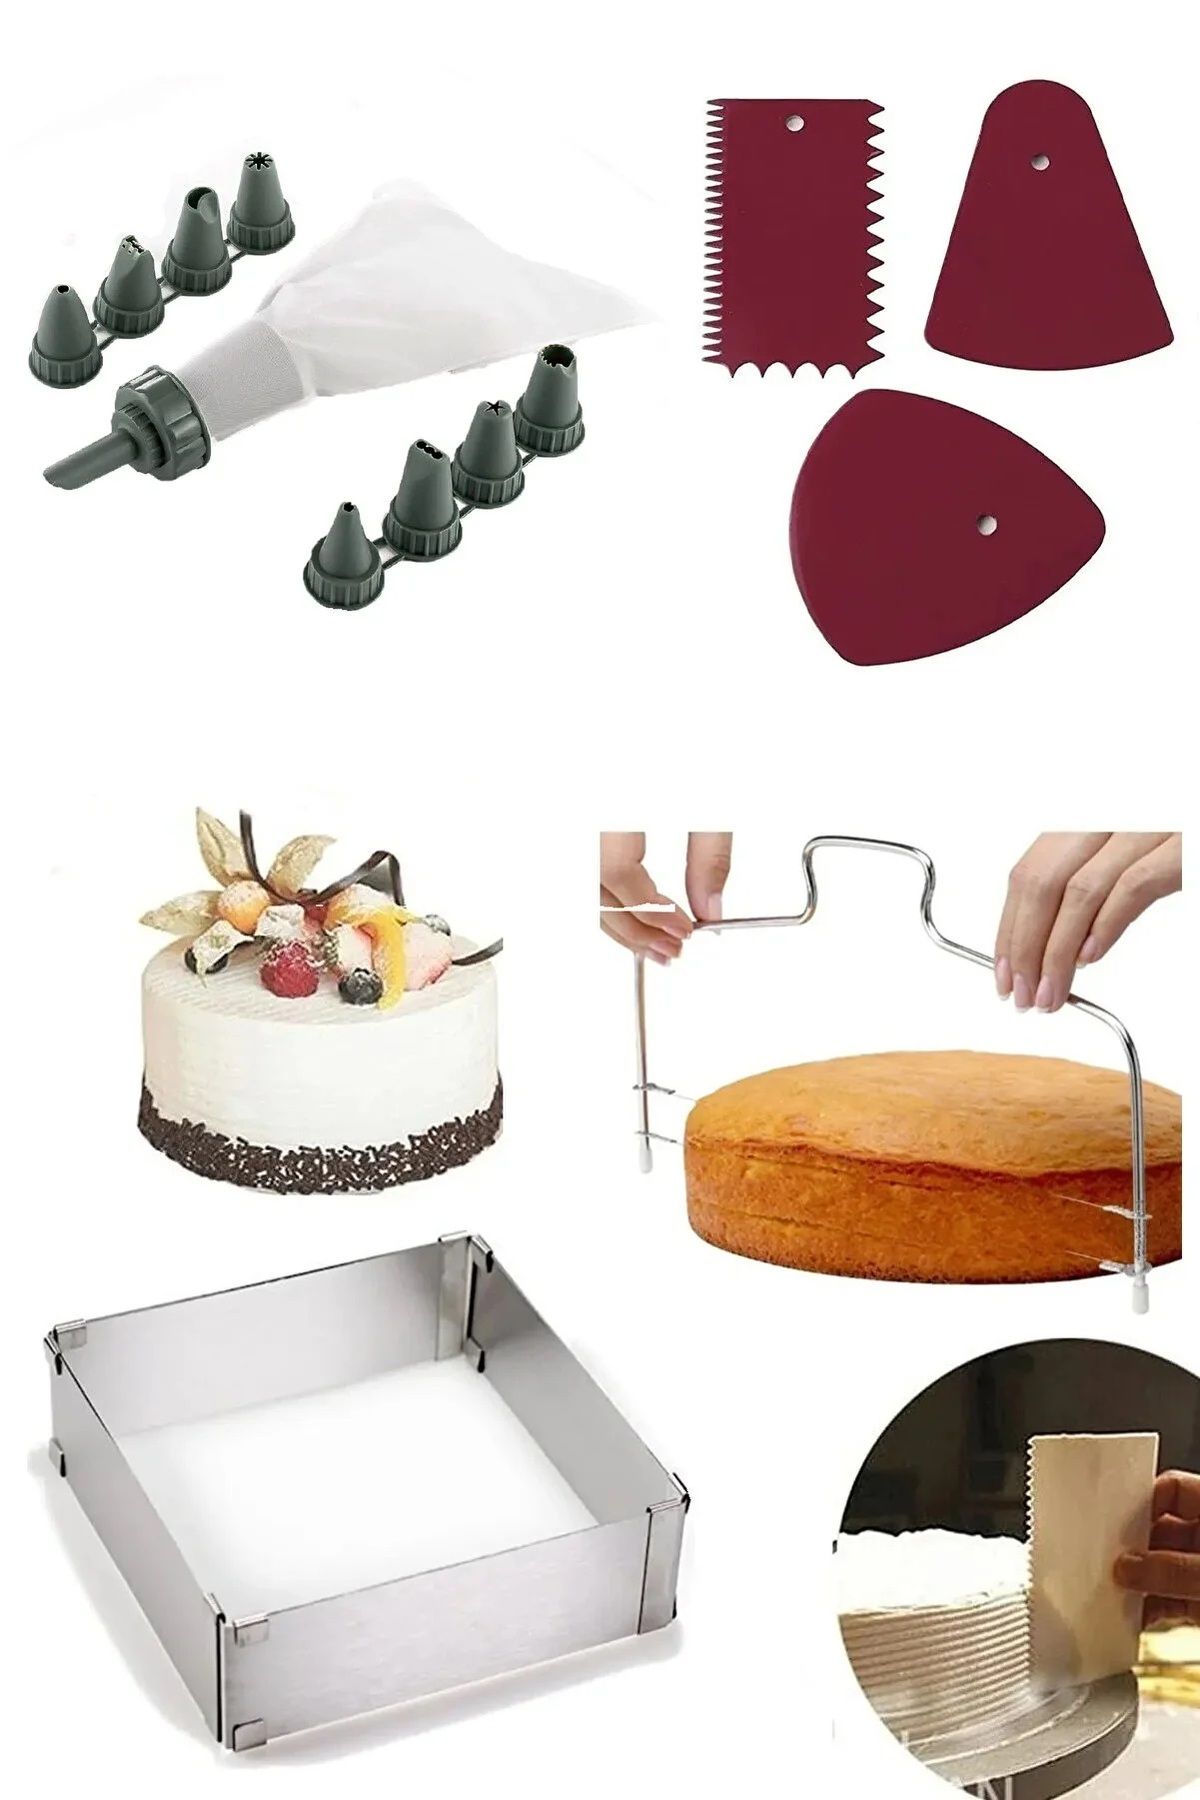 grasyahome 4'lü Lüx Pastacılık Ekipmanları Ayarlı Kek Çemberi,Krema Torbası,Kek Testeresi,3lü Hamur Kazıyıcı